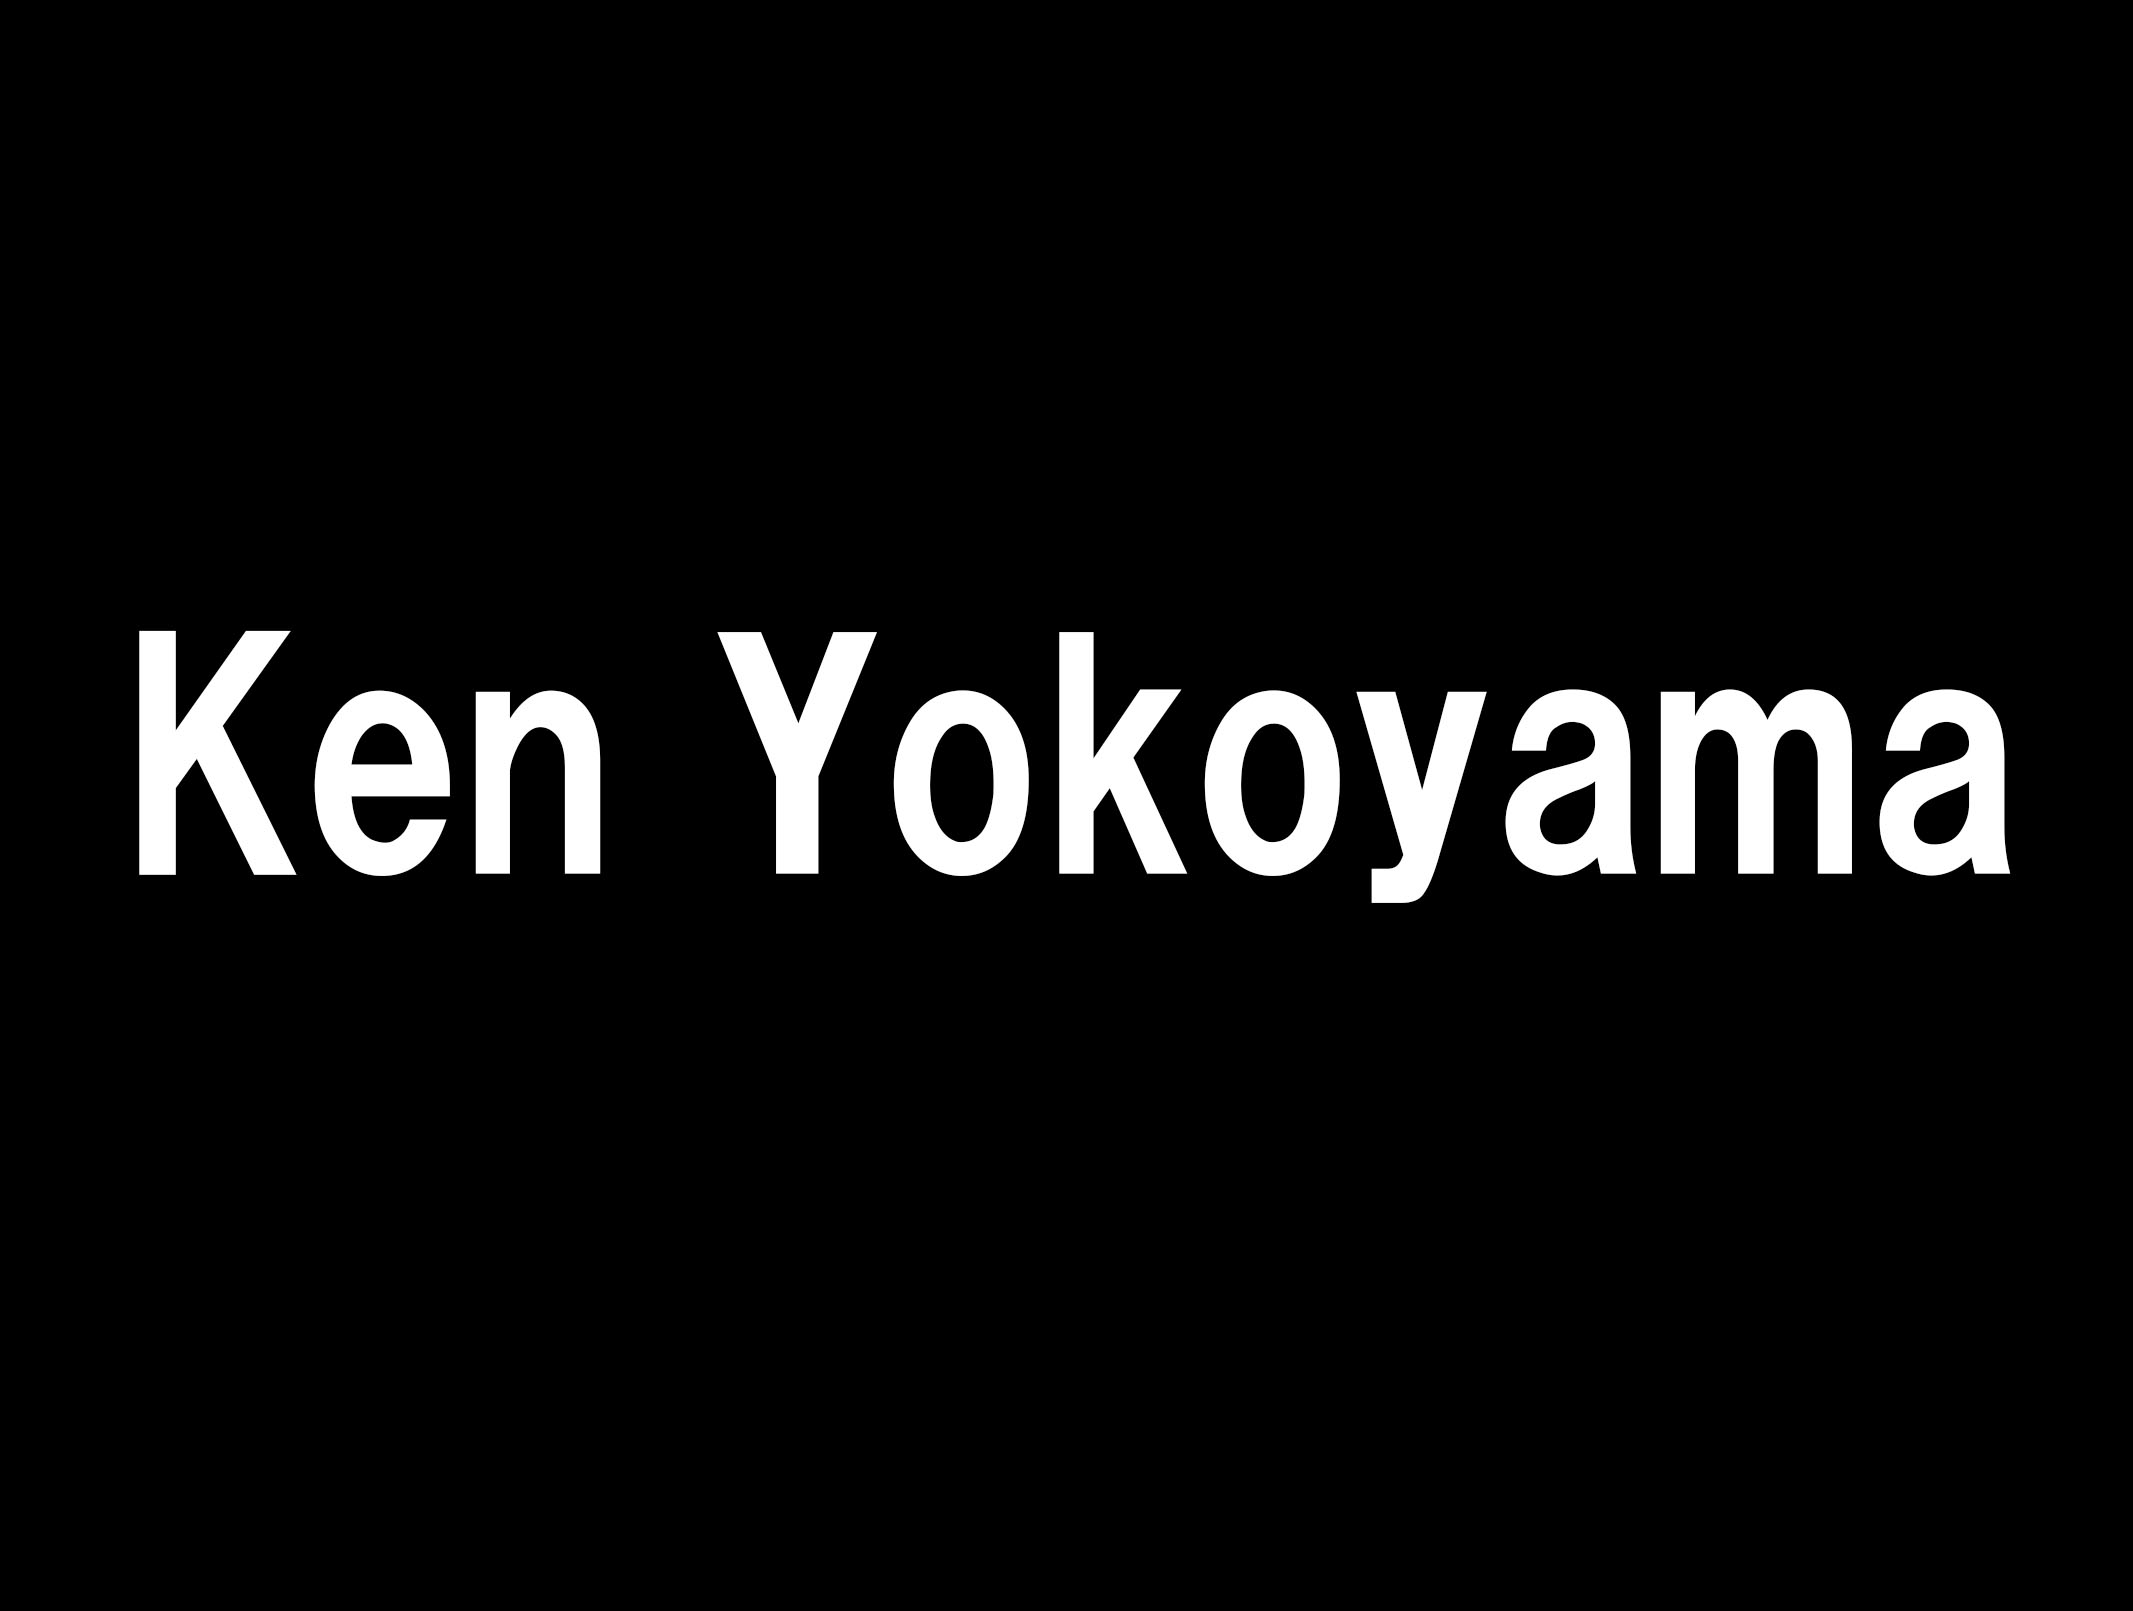 Ken Yokoyama/横山健さんのコラムが凄い2つの理由について